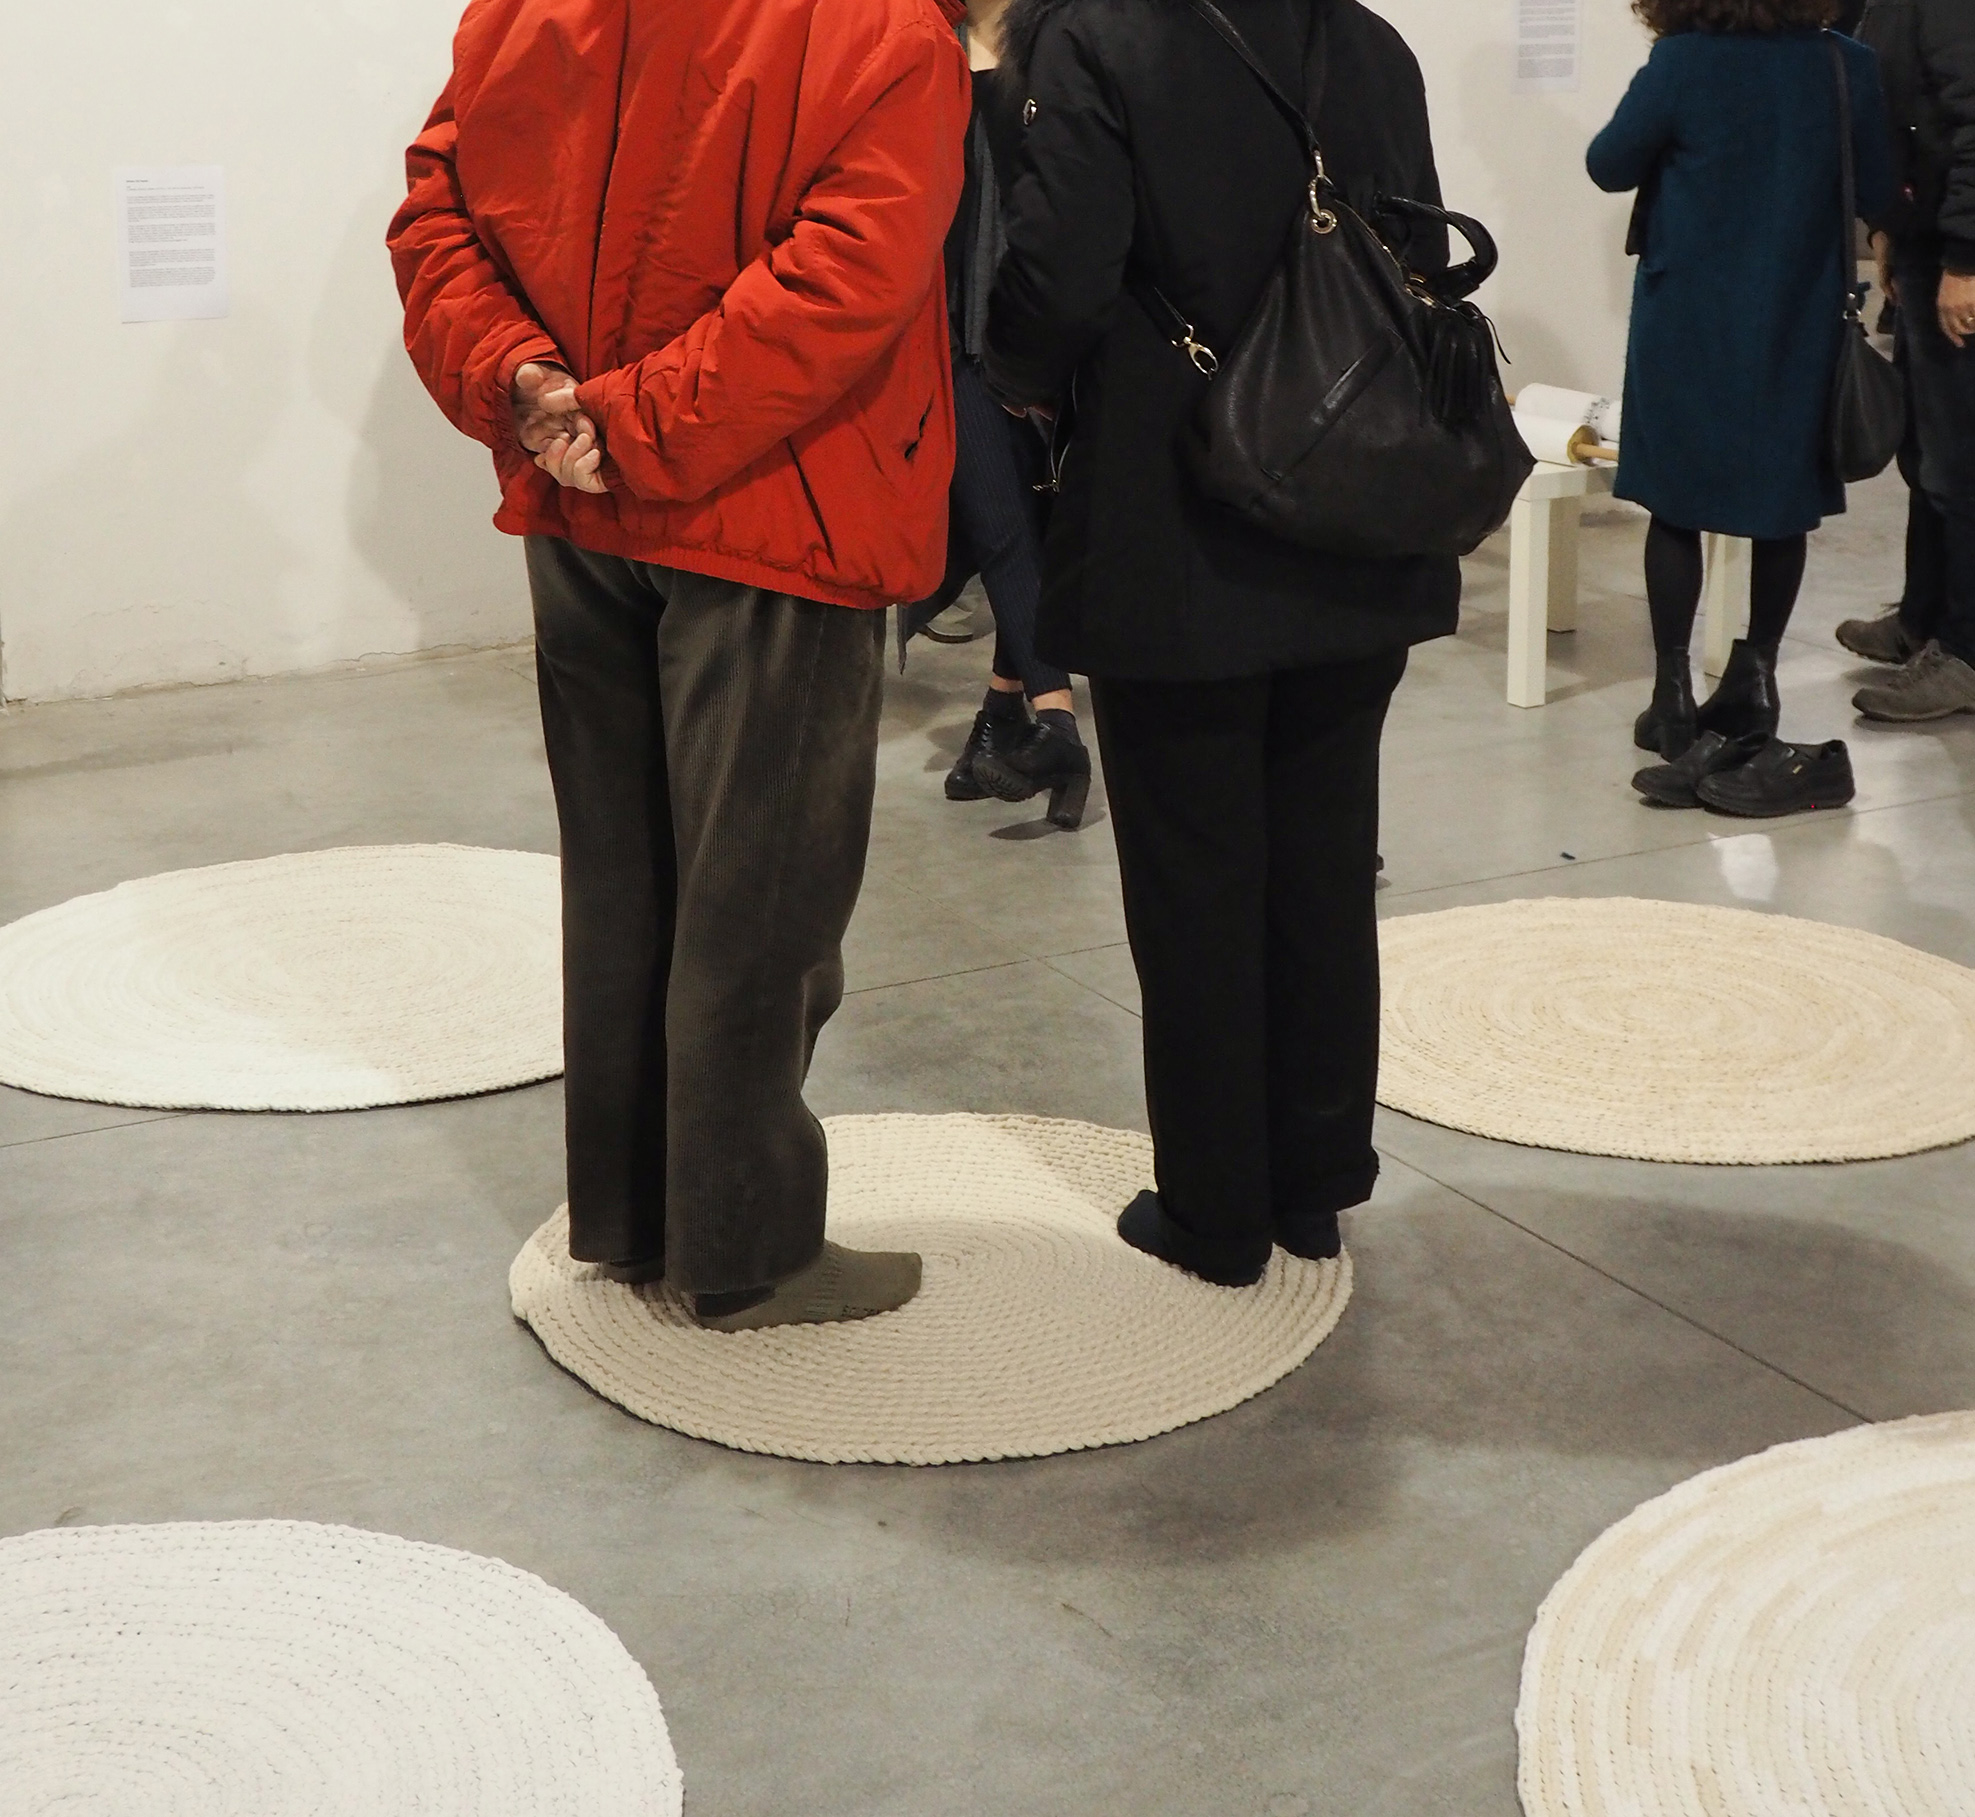 Exhibition views, “Arteimpresa”, curated by Erica Romano and Silvia Bellotti, Sala Campolmi, Museo del Tessuto, Prato, 2020